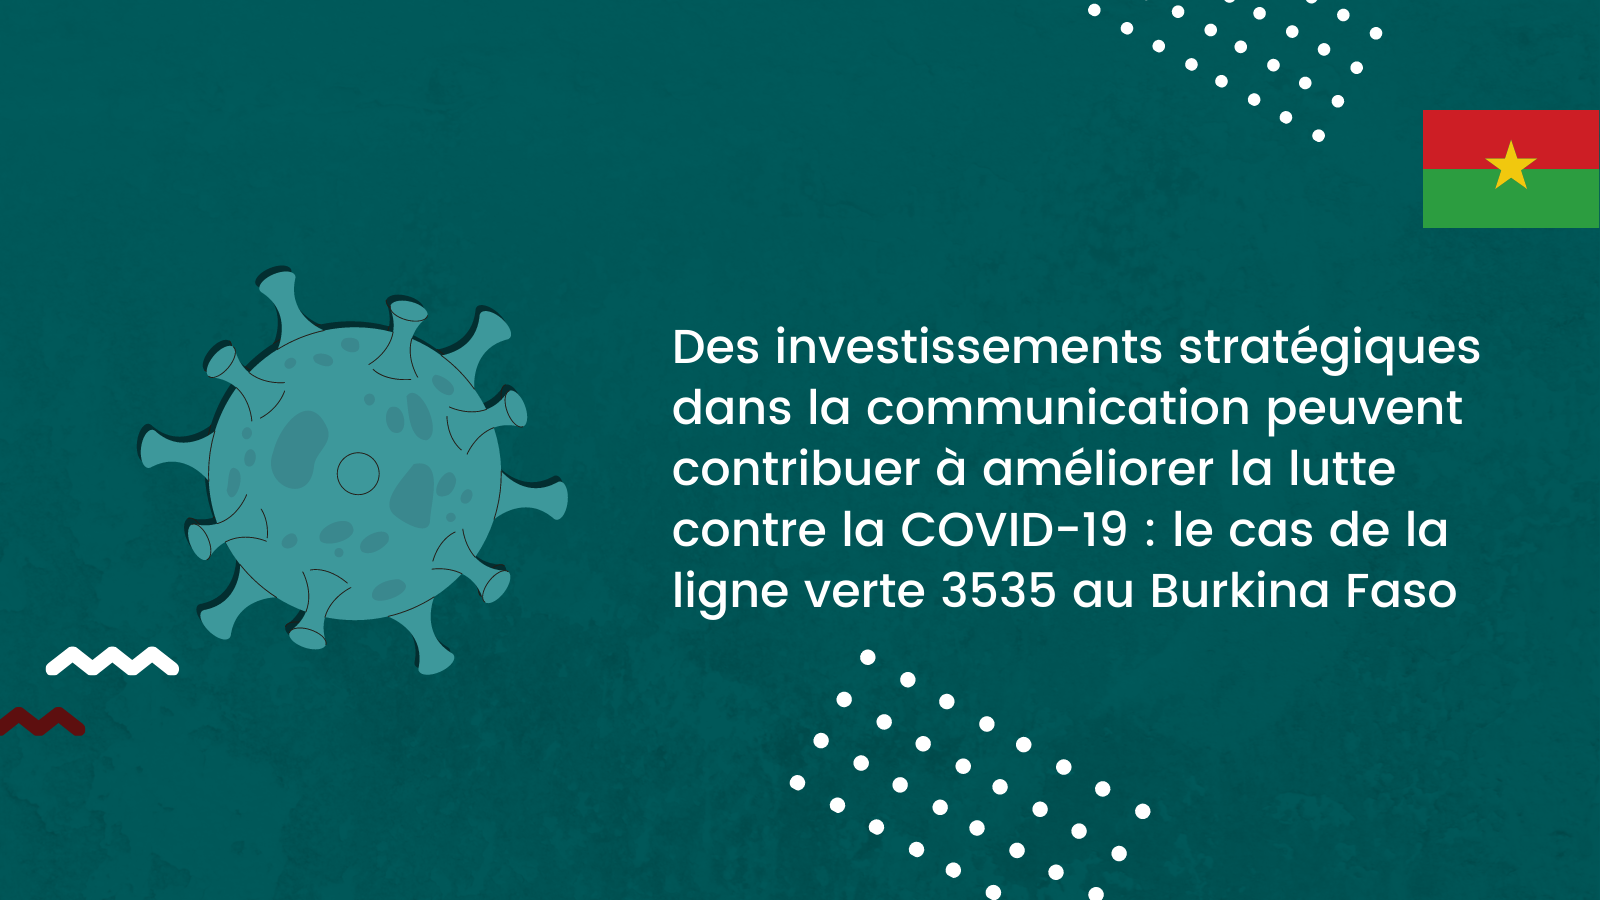 Des investissements stratégiques dans la communication peuvent contribuer à améliorer la lutte contre la COVID-19 : le cas de la ligne verte 3535 au Burkina Faso